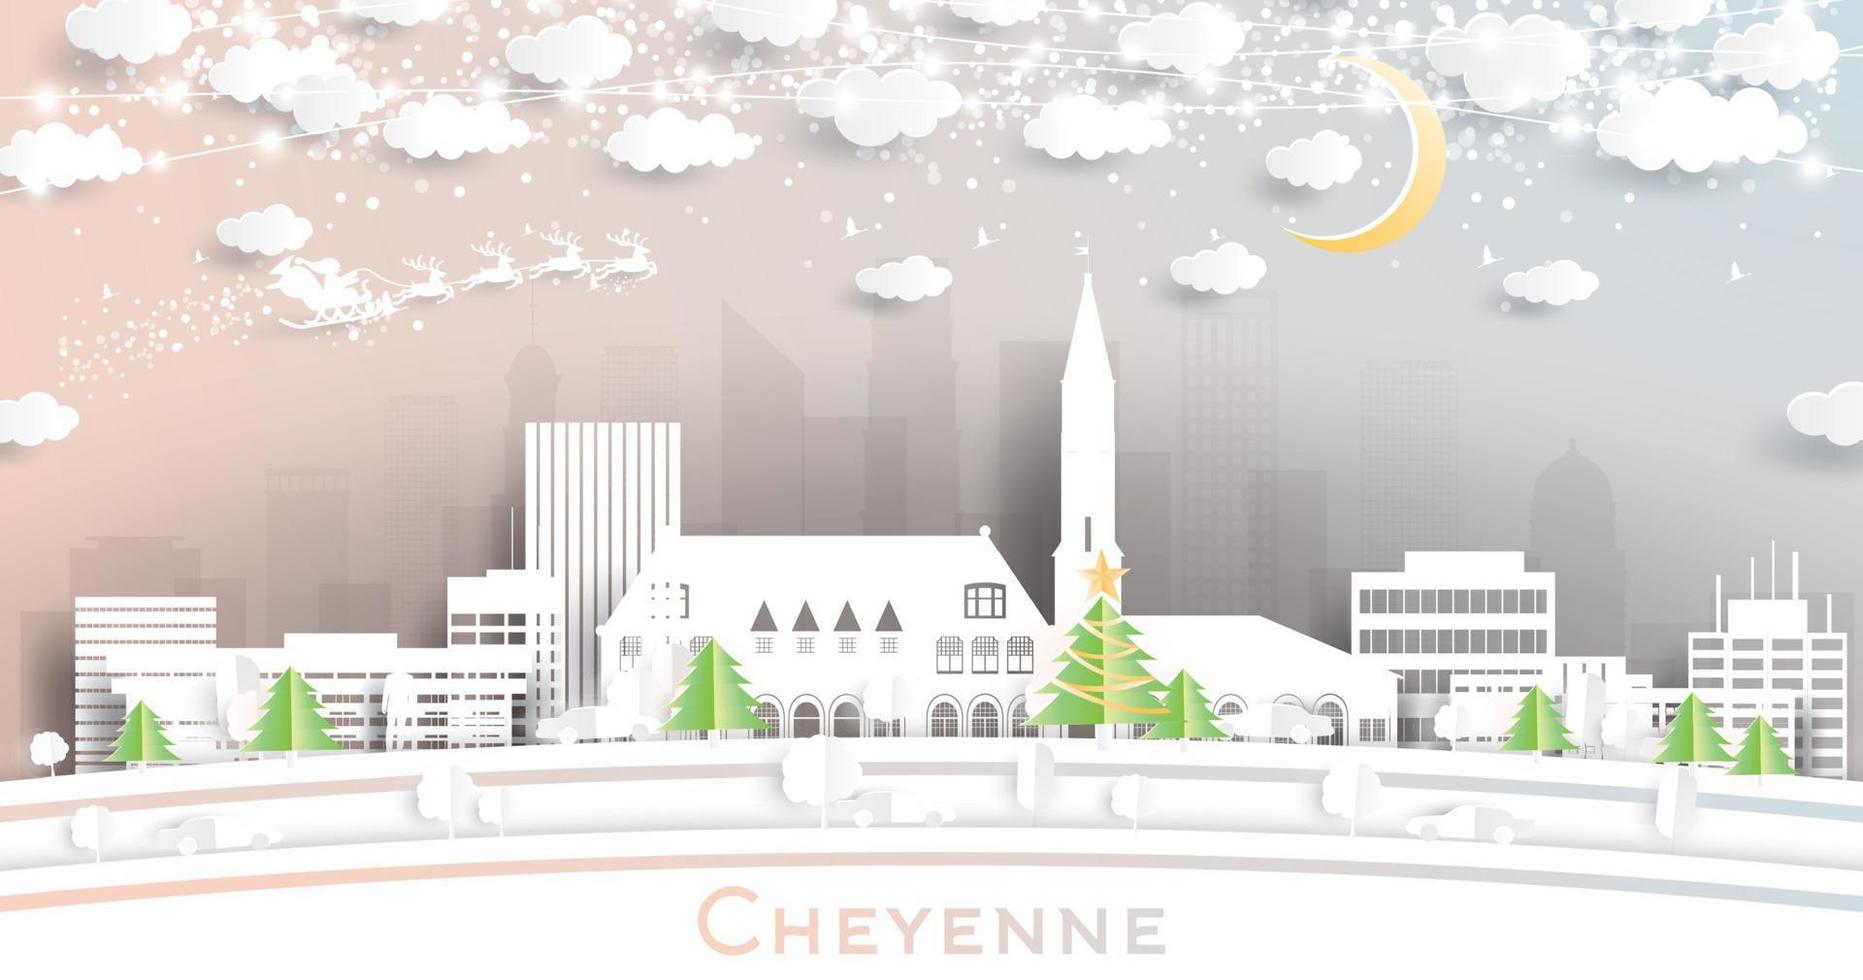 cheyenne Wyoming Verenigde Staten van Amerika stad horizon in papier besnoeiing stijl met sneeuwvlokken, maan en neon guirlande. vector